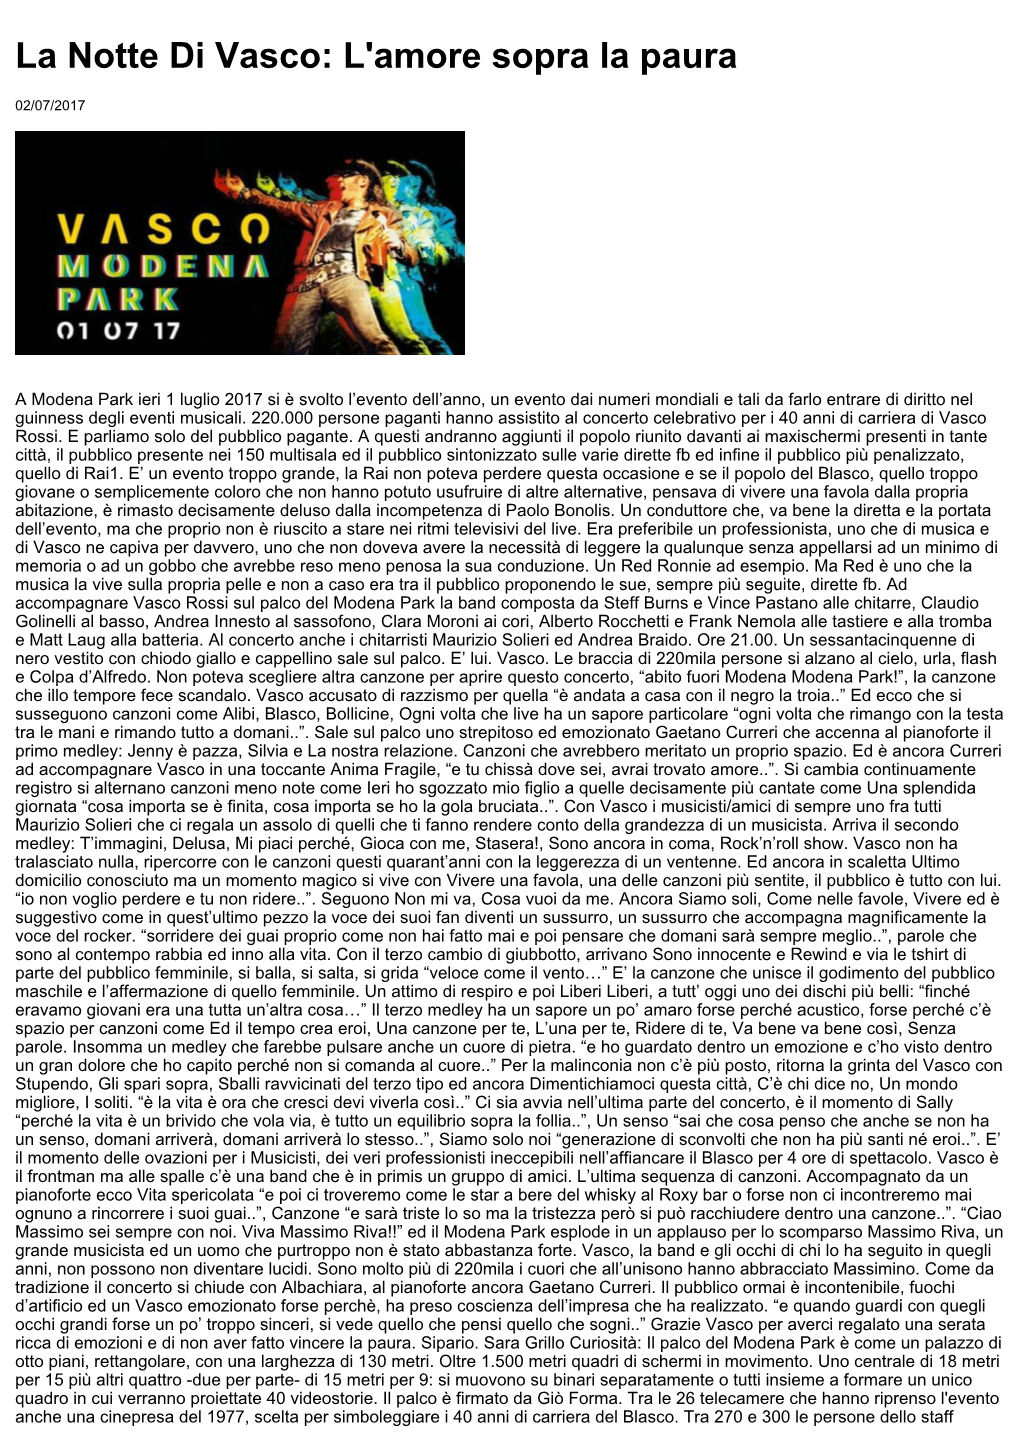 La Notte Di Vasco: L'amore Sopra La Paura